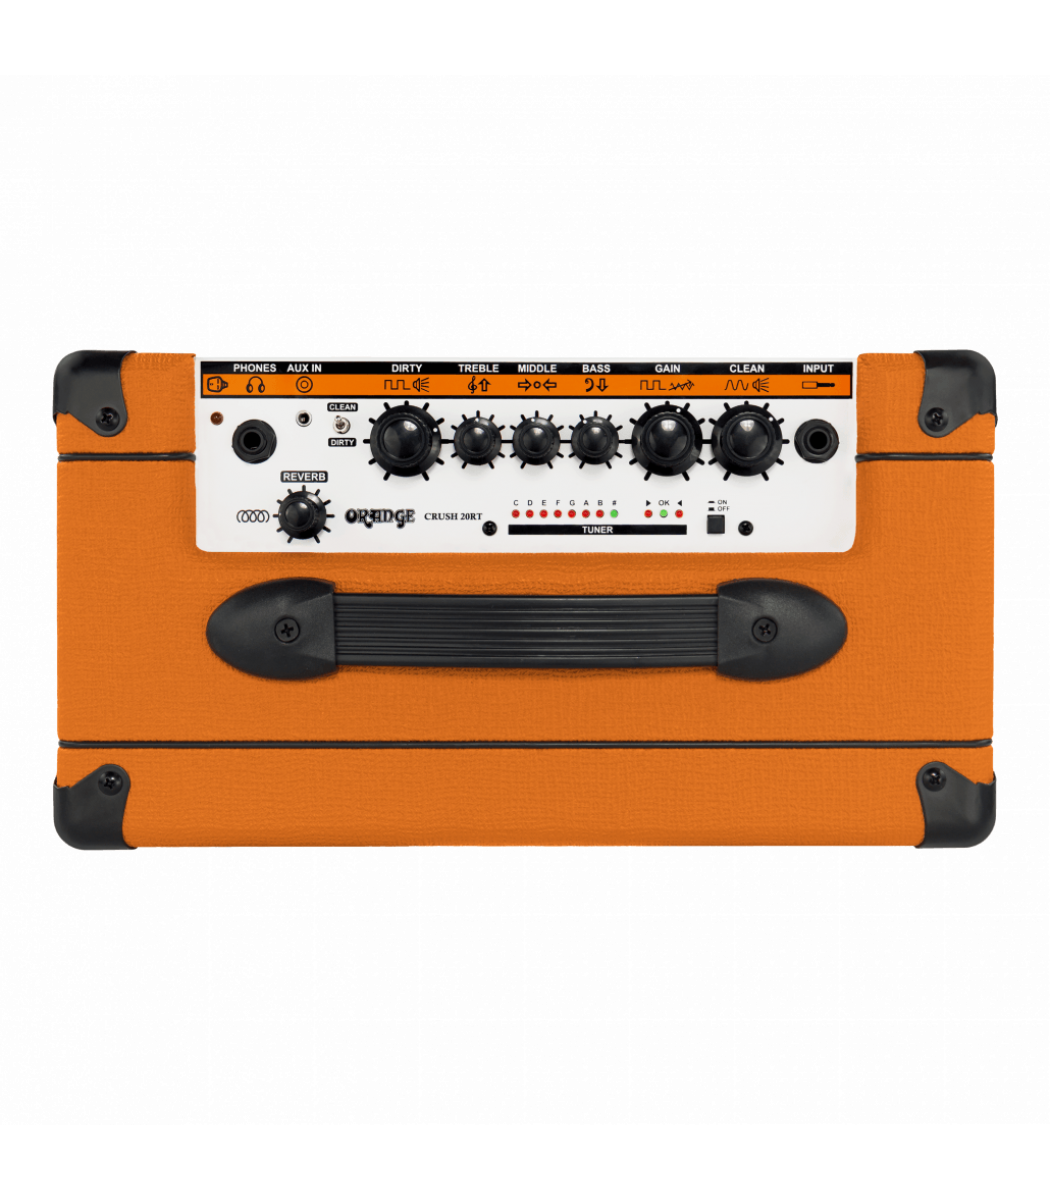 orange crush amp